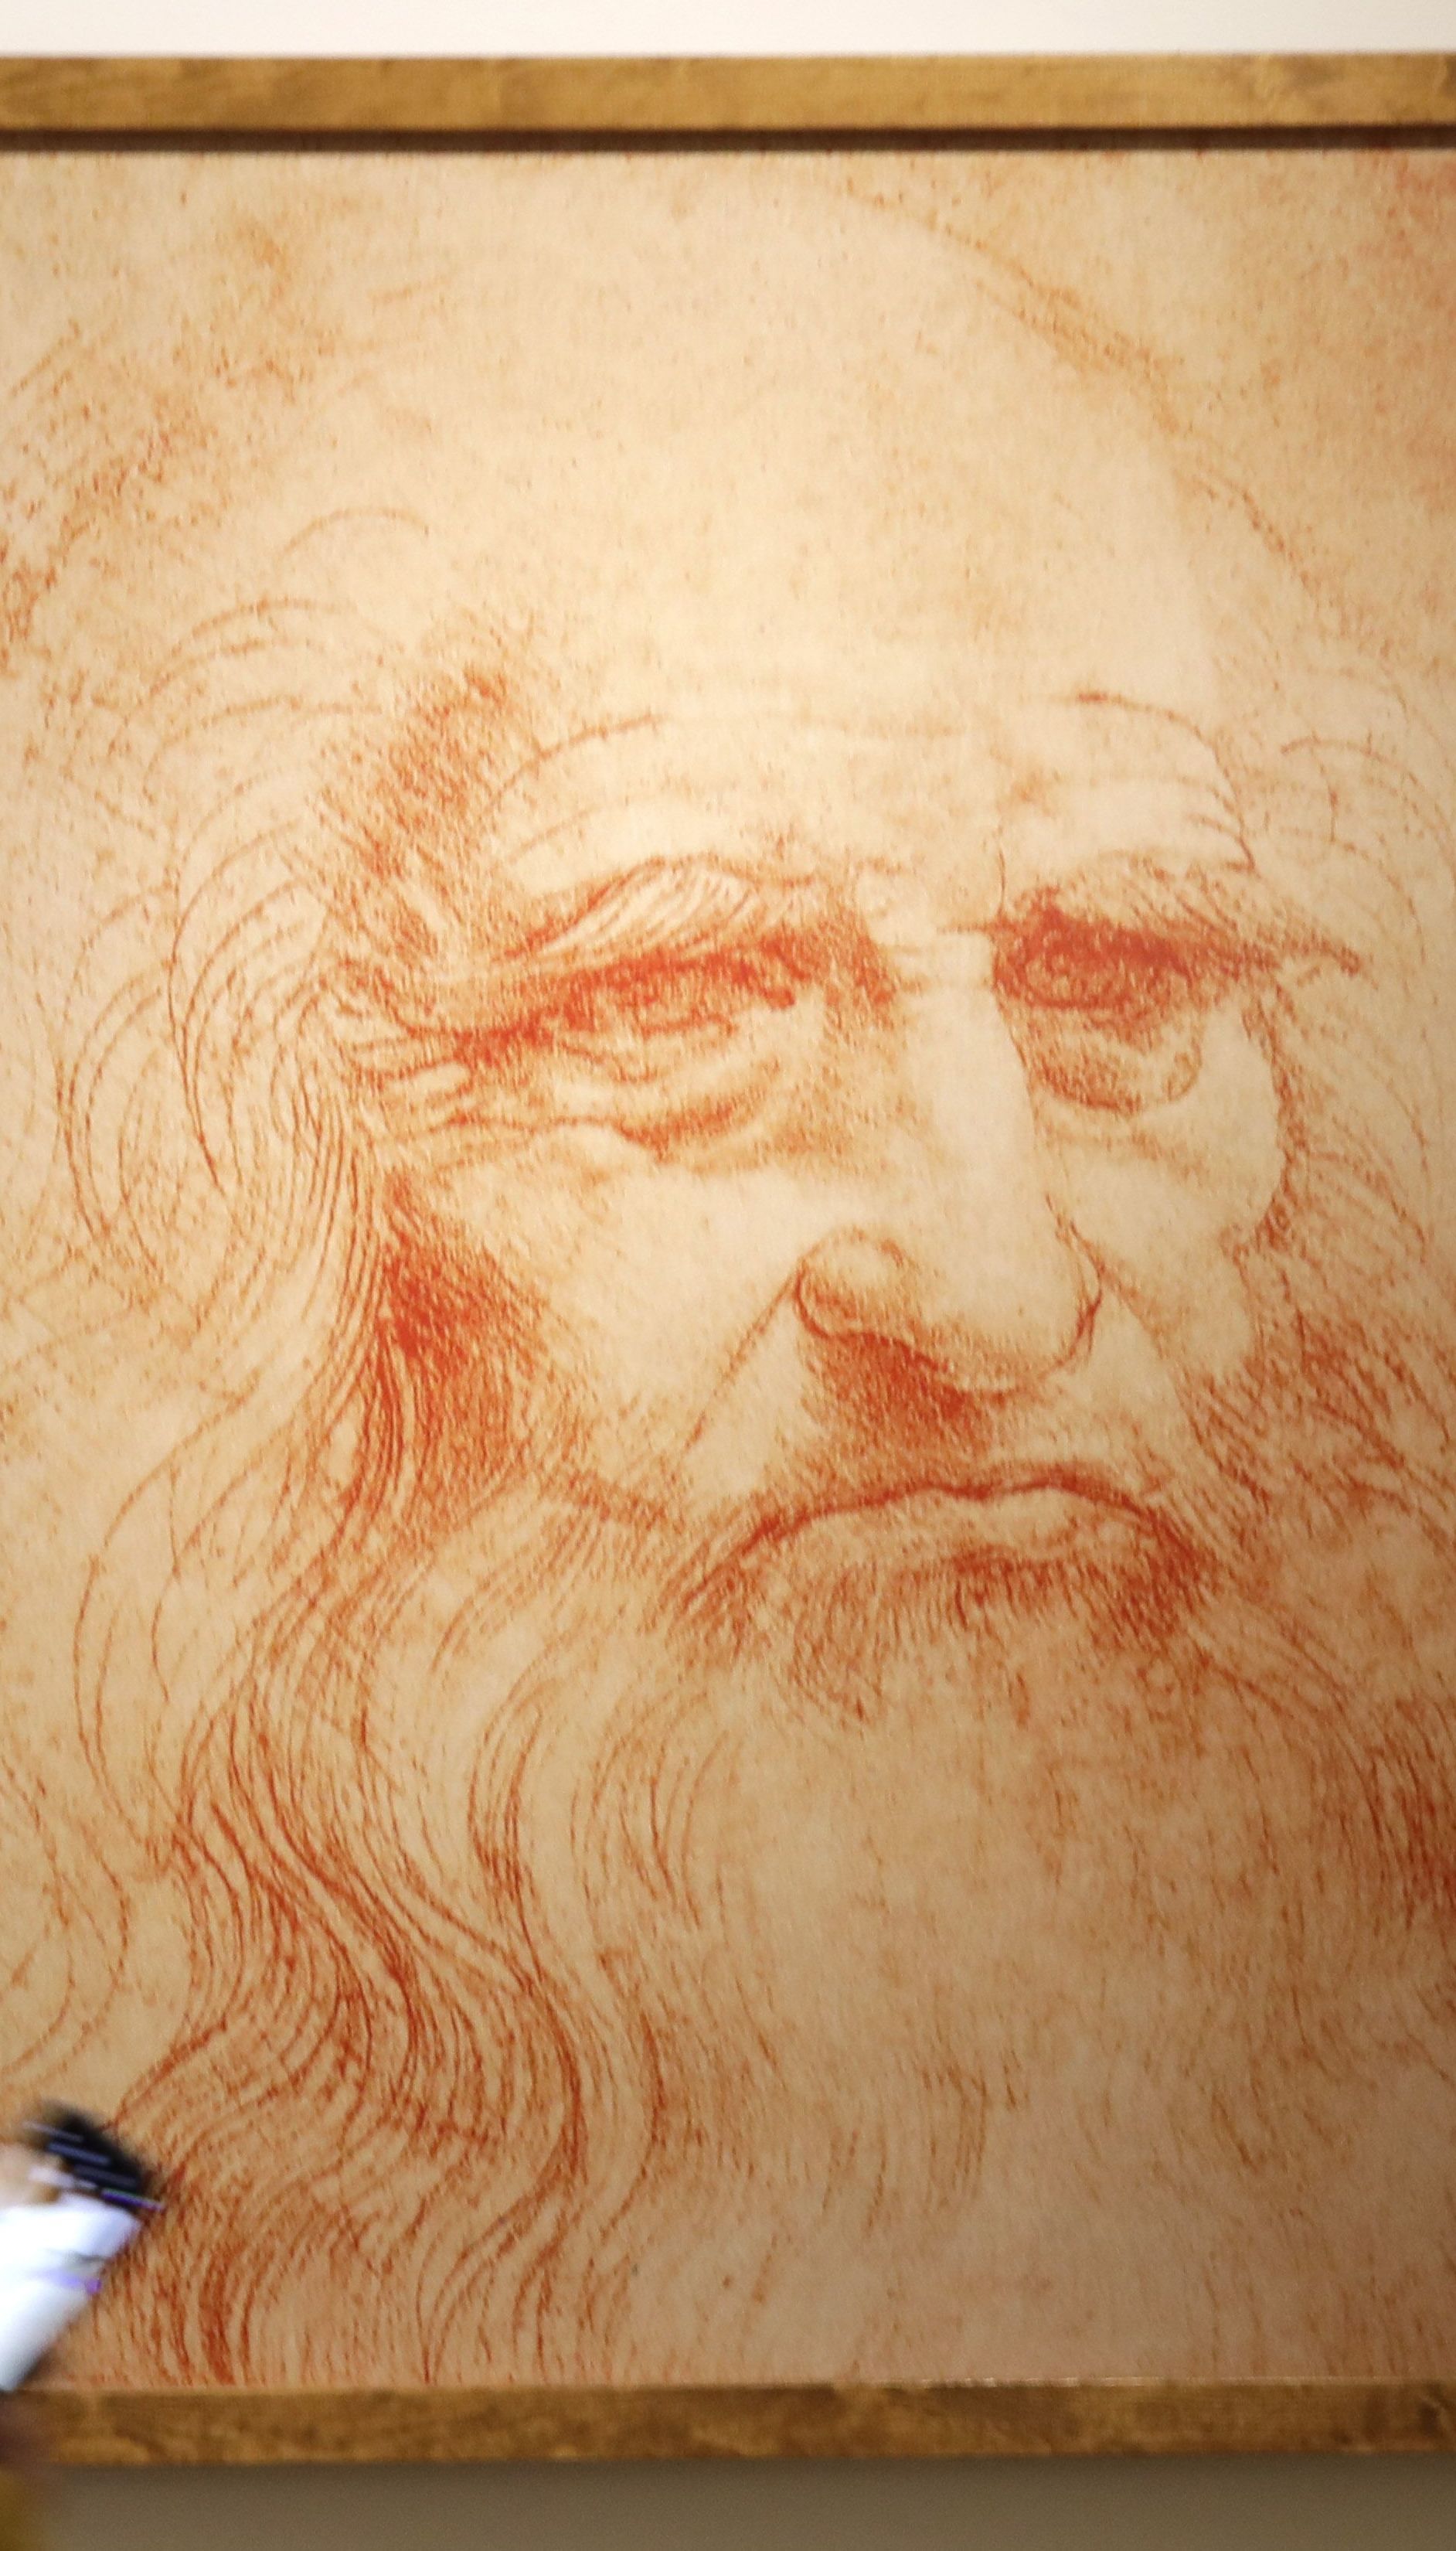 Медики поставили диагноз Леонардо да Винчи через 500 лет после его смерти